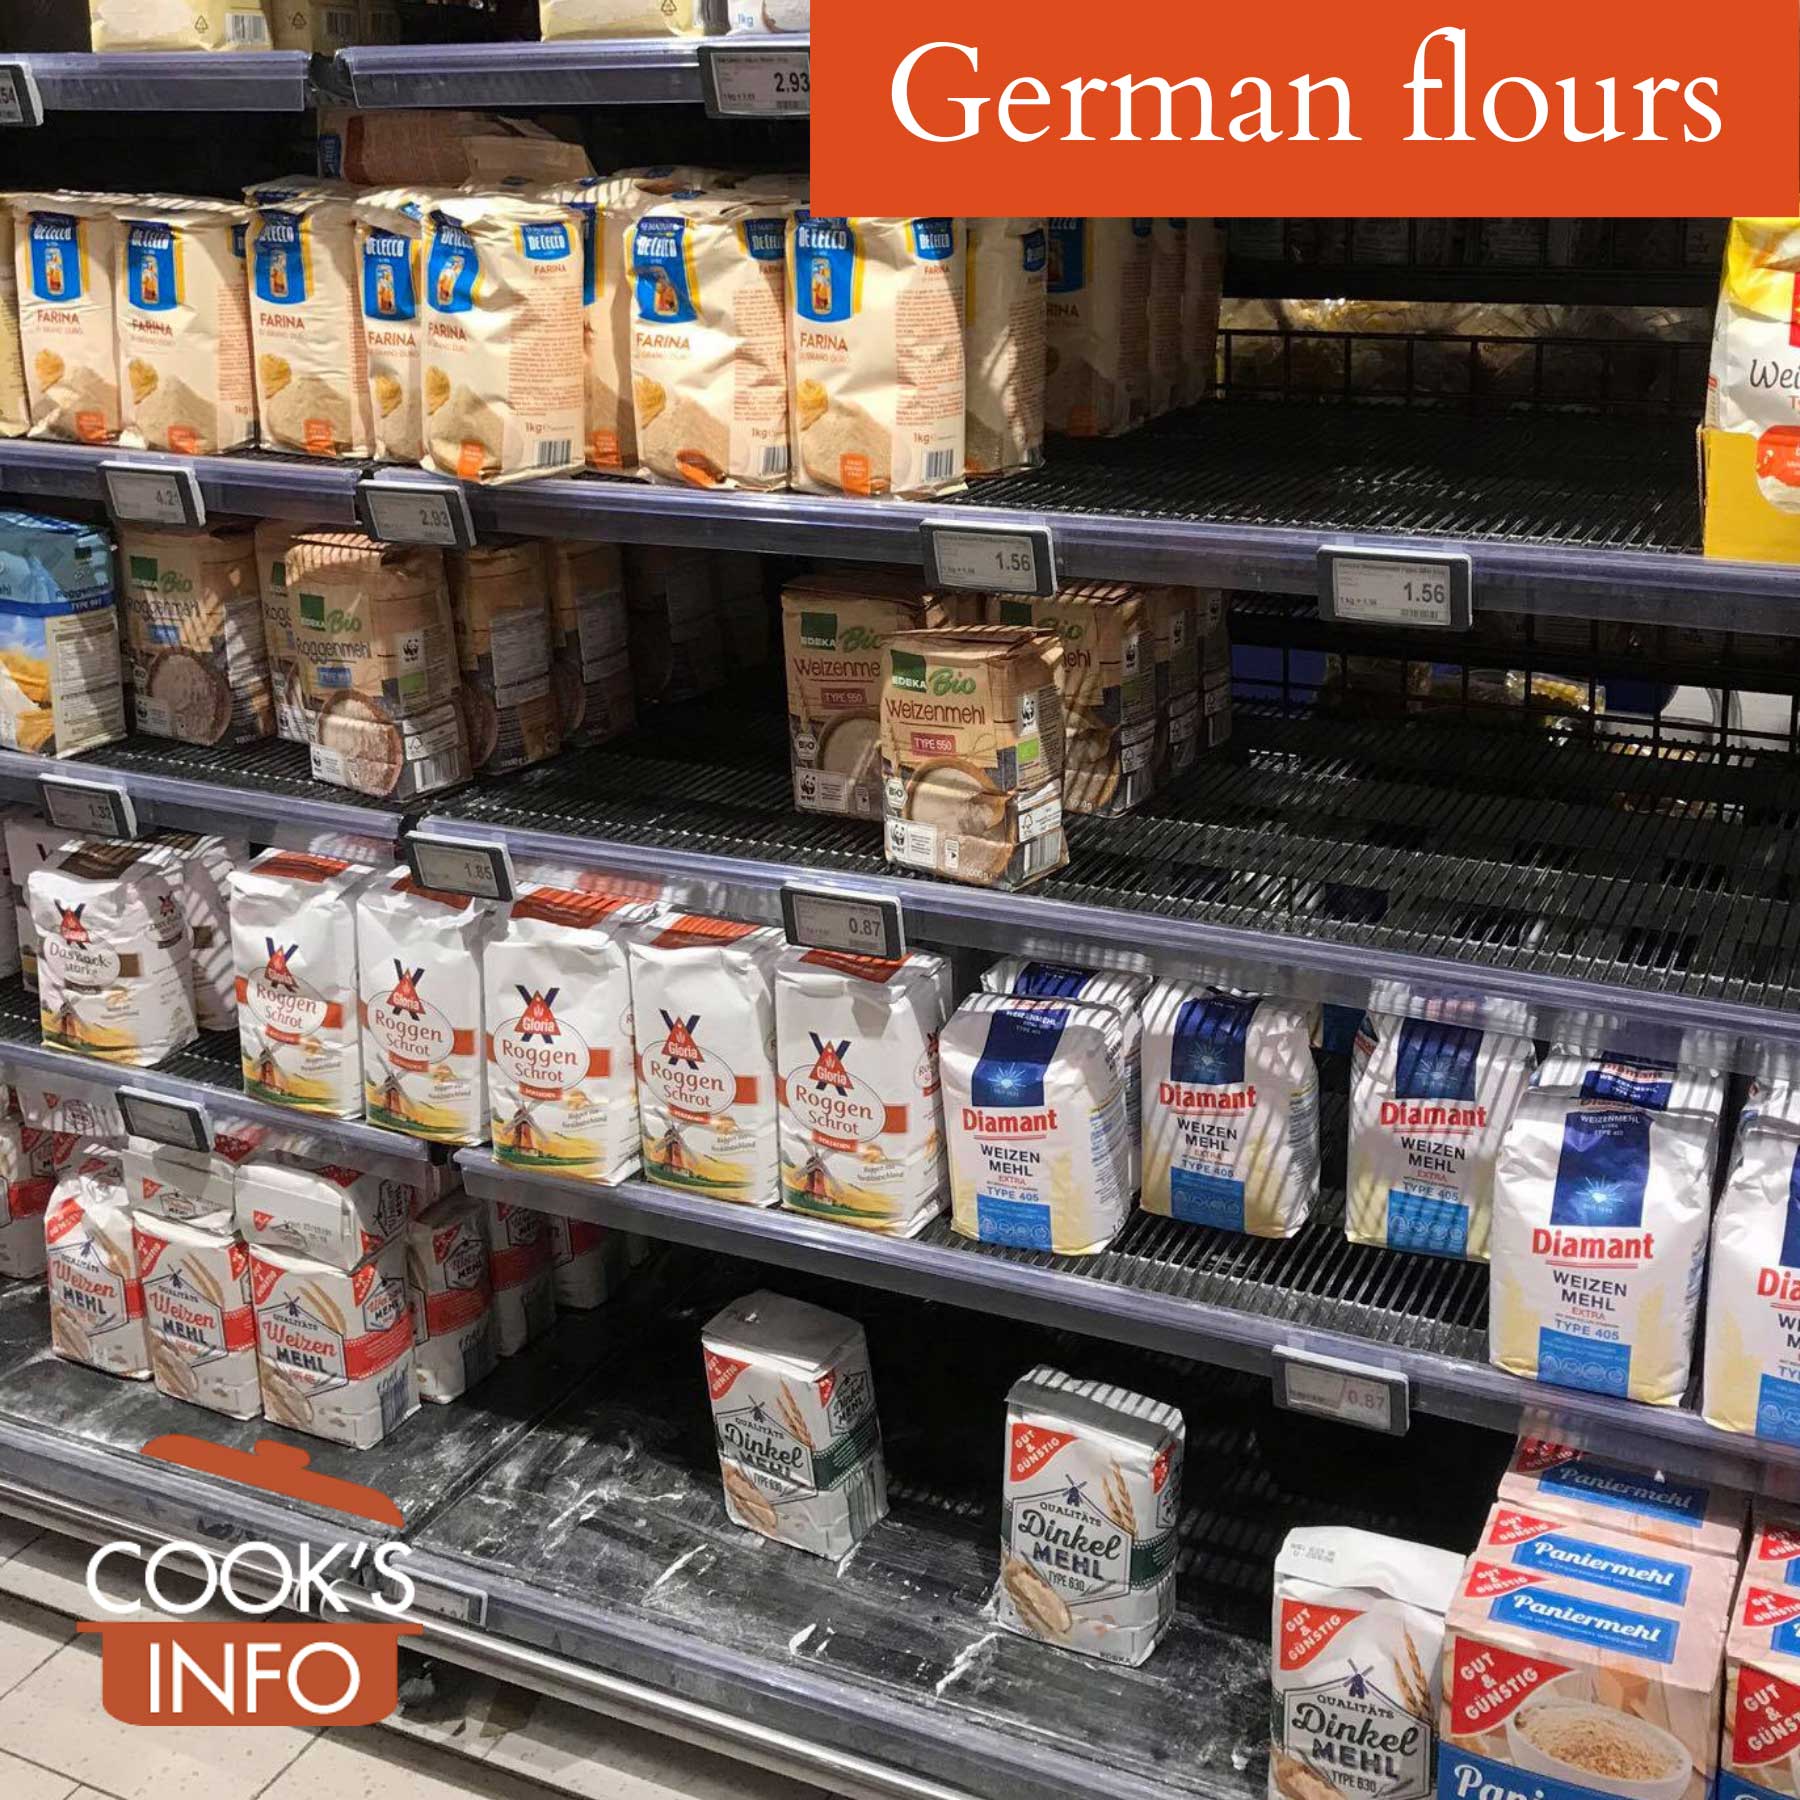 German flours at supermarket in Hamburg